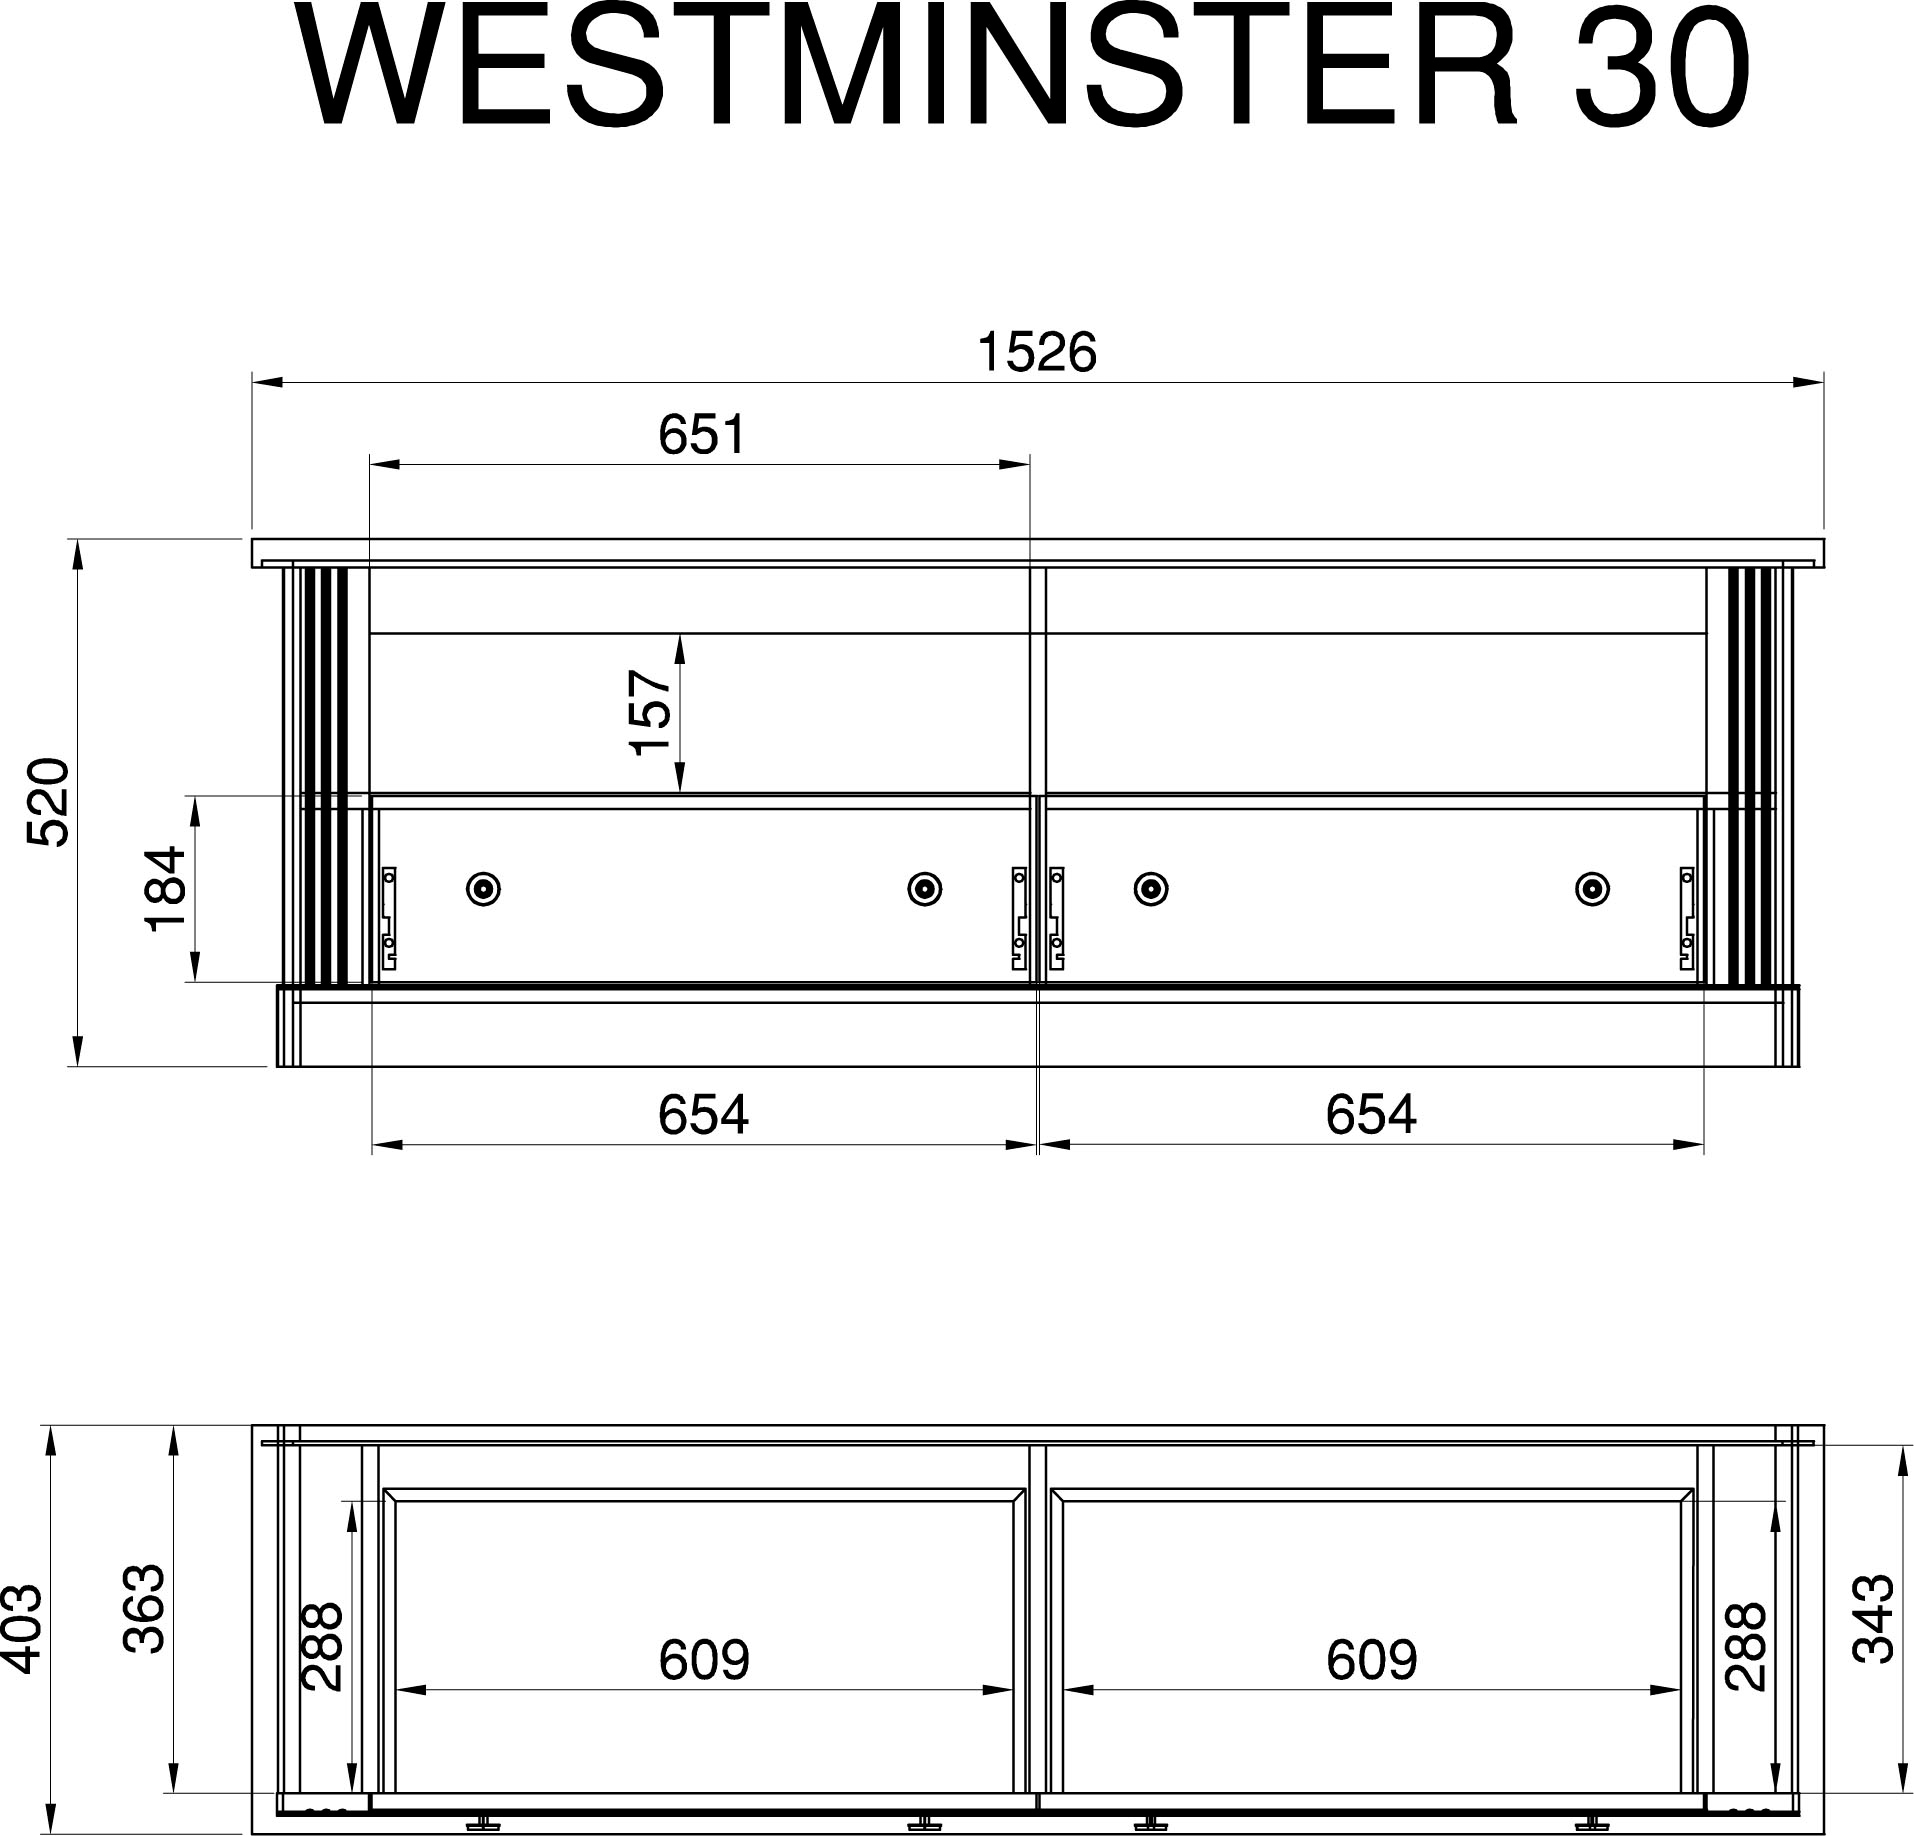 Home affaire Lowboard »Westminster«, Fernsehtisch in romantischem Landhausstil